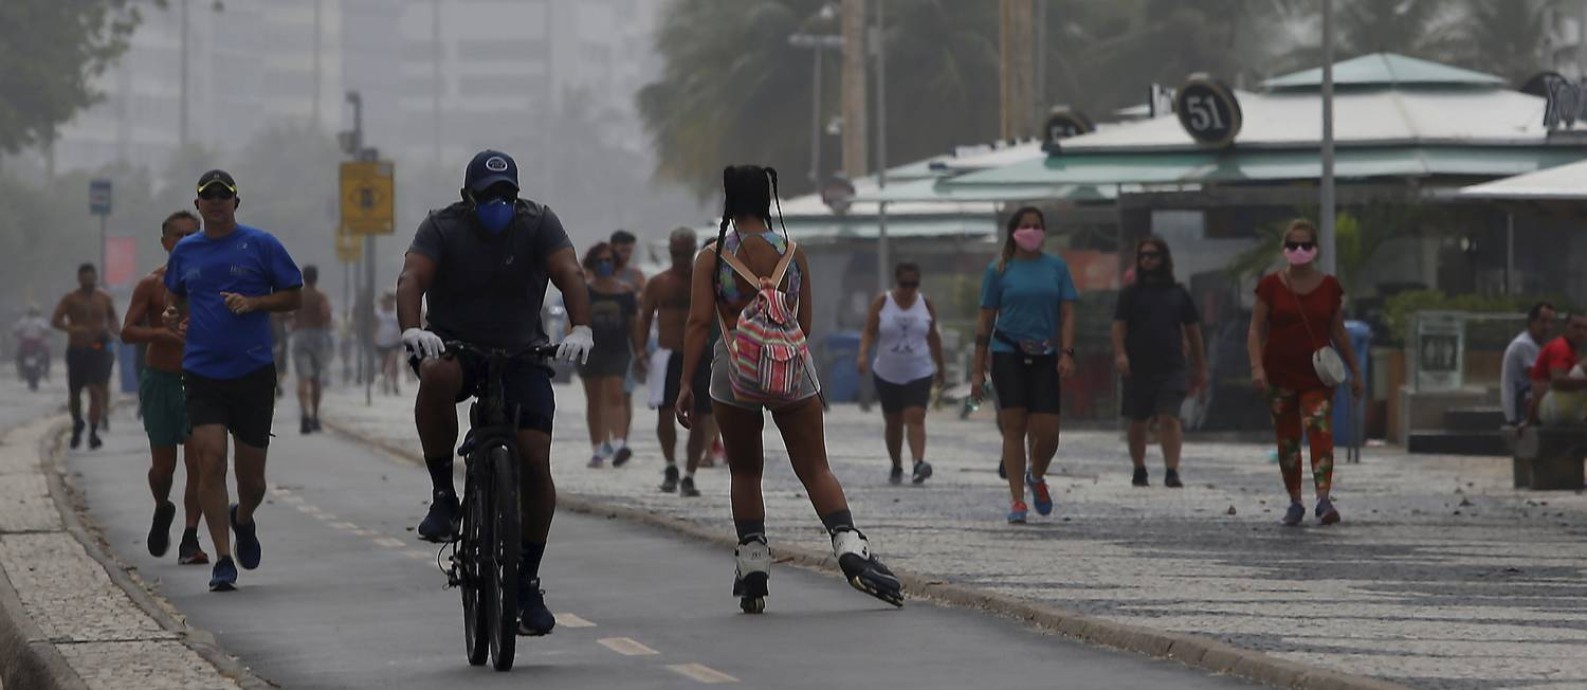 Na manhã de domingo (05), o calçadão de Copacabana ficou movimentado com pessoas caminhando e pedalando Foto: FABIANO ROCHA / Agência O Globo